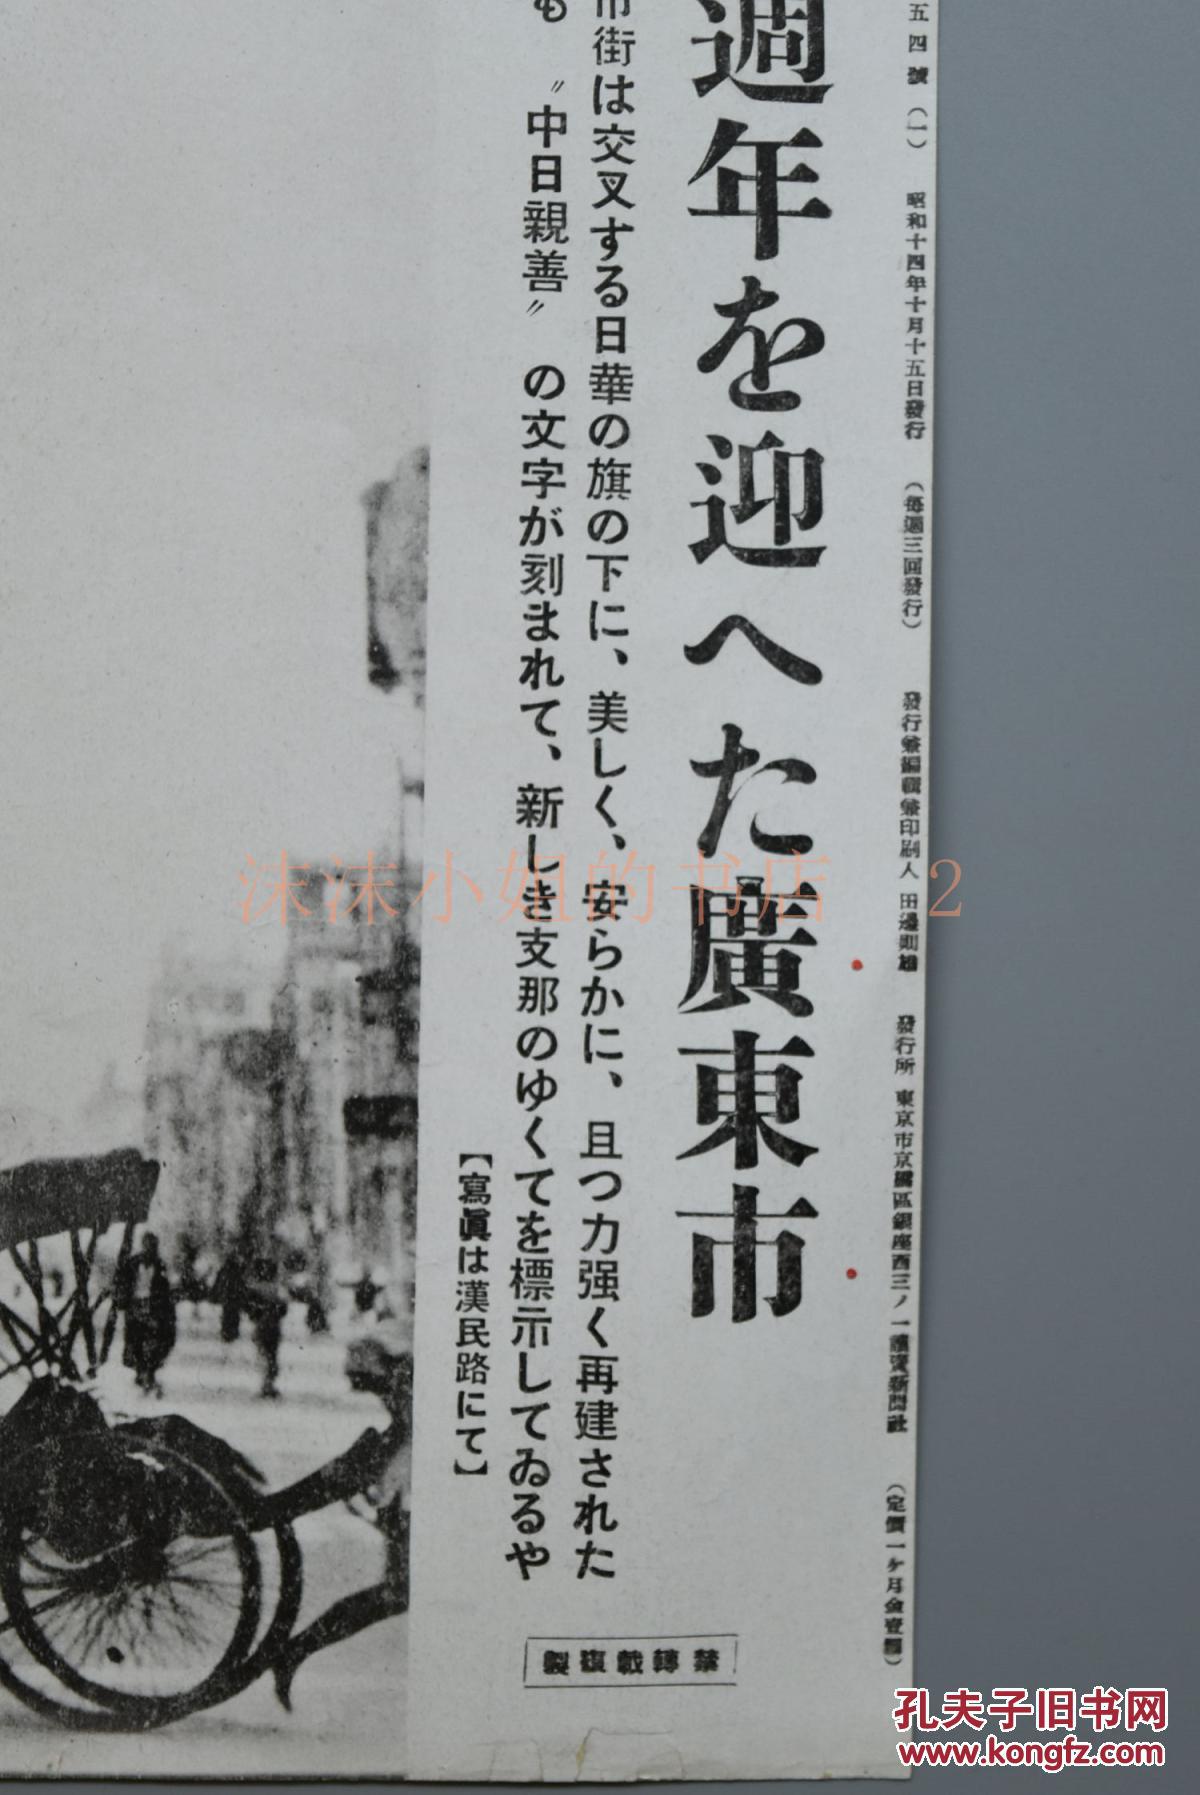 侵华史料《广州战役一周年的广东市》读卖新闻社 黑白